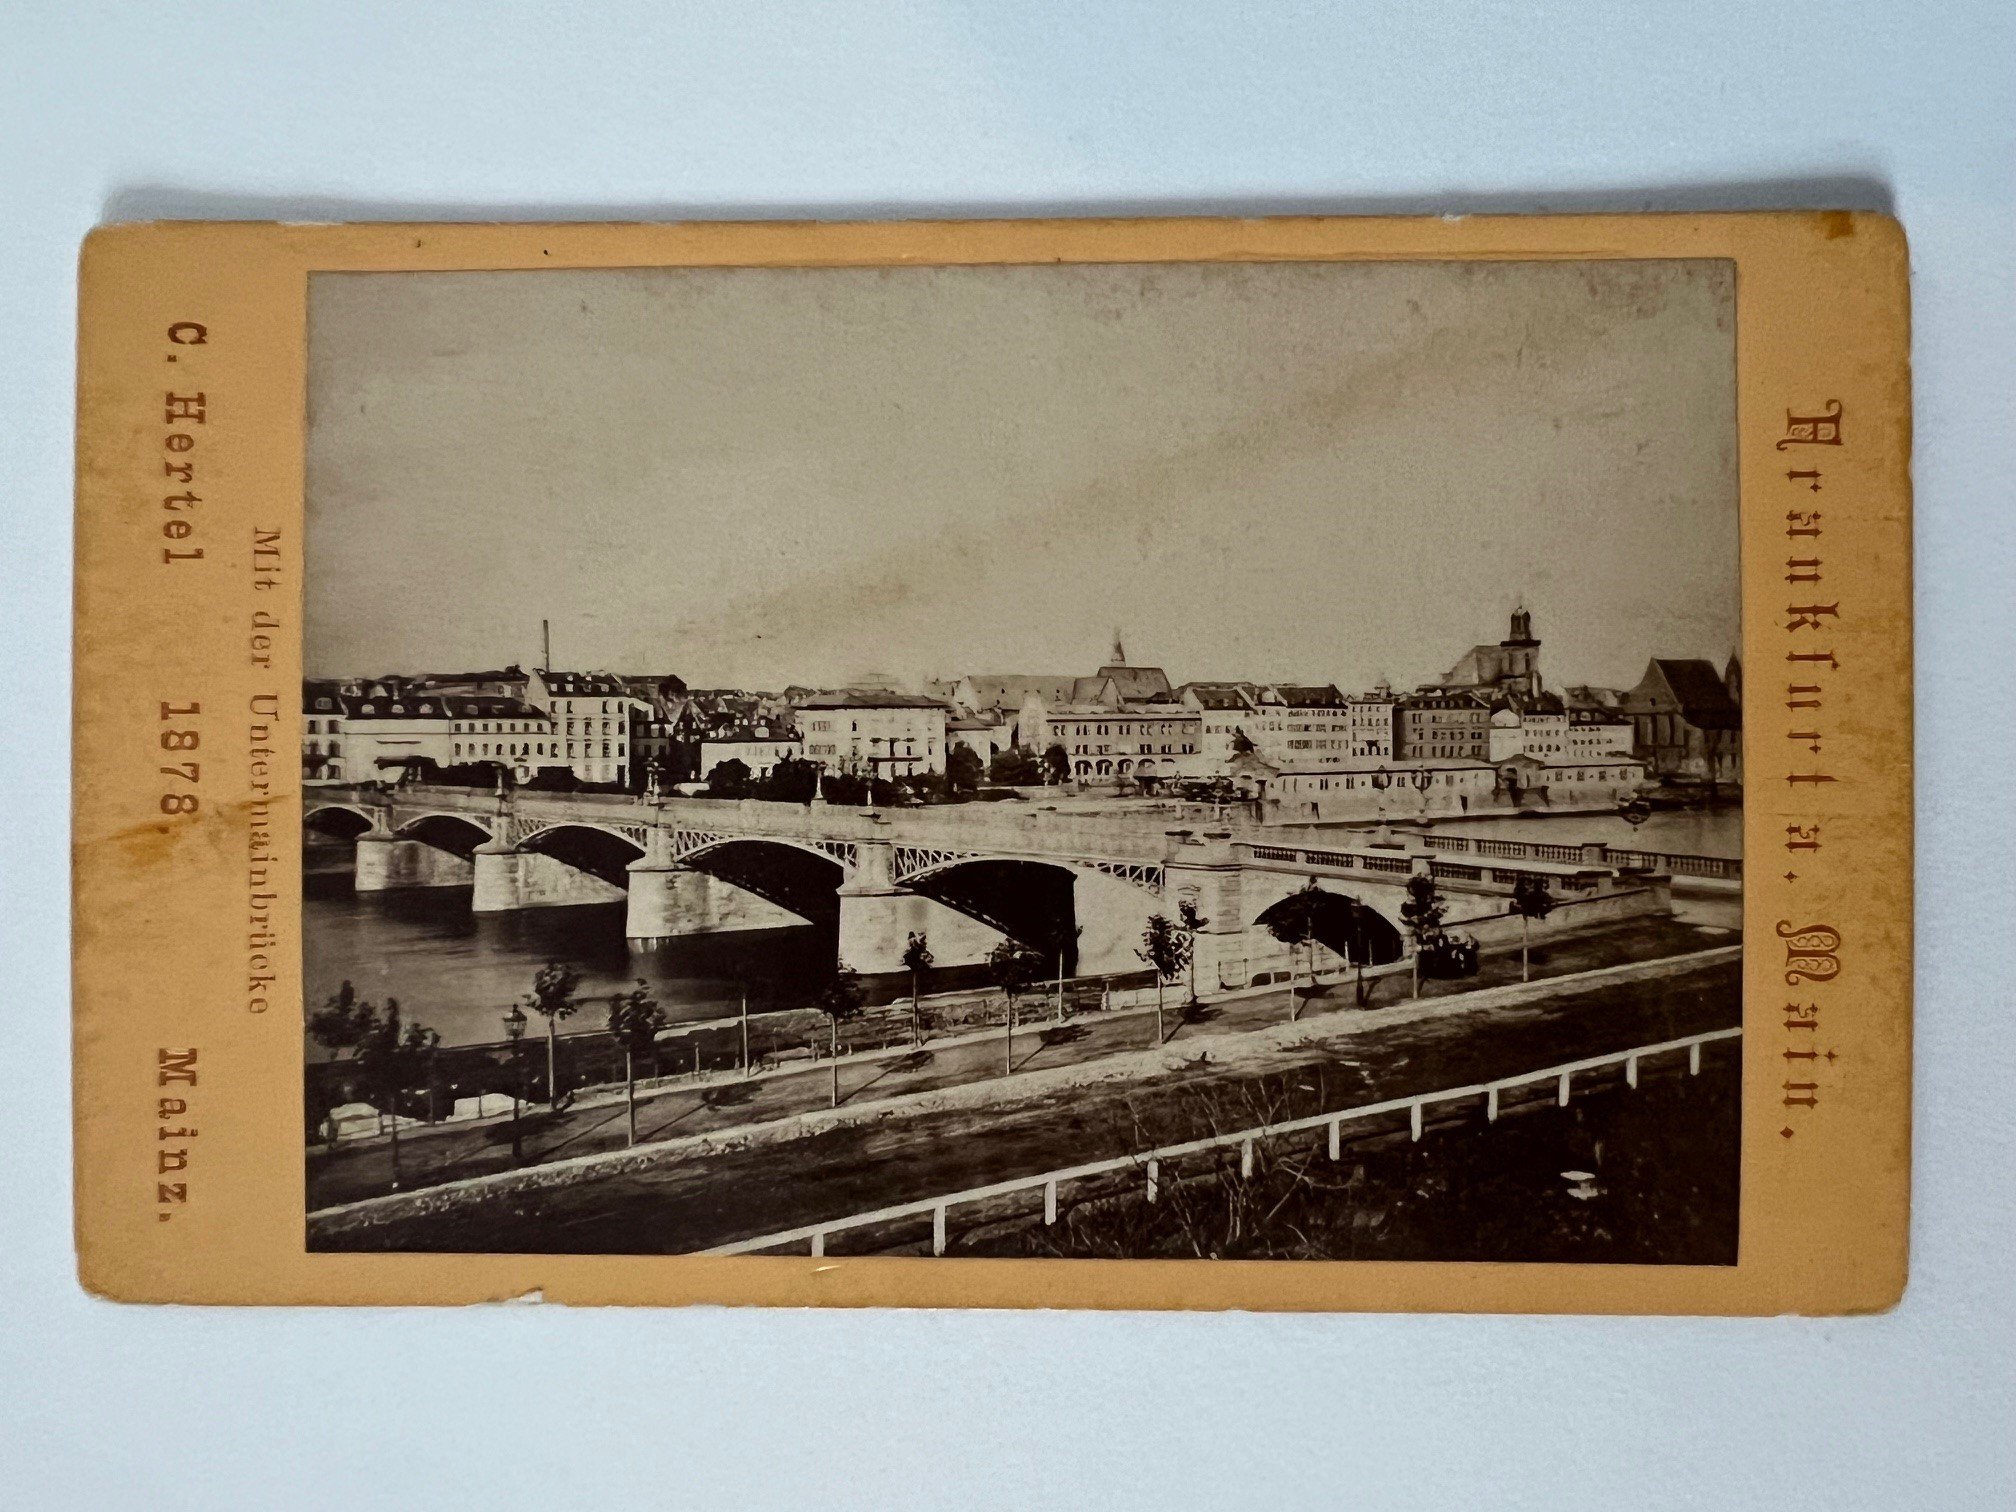 CdV, Carl Hertel, Frankfurt, Mit der Untermainbrücke, 1878. (Taunus-Rhein-Main - Regionalgeschichtliche Sammlung Dr. Stefan Naas CC BY-NC-SA)